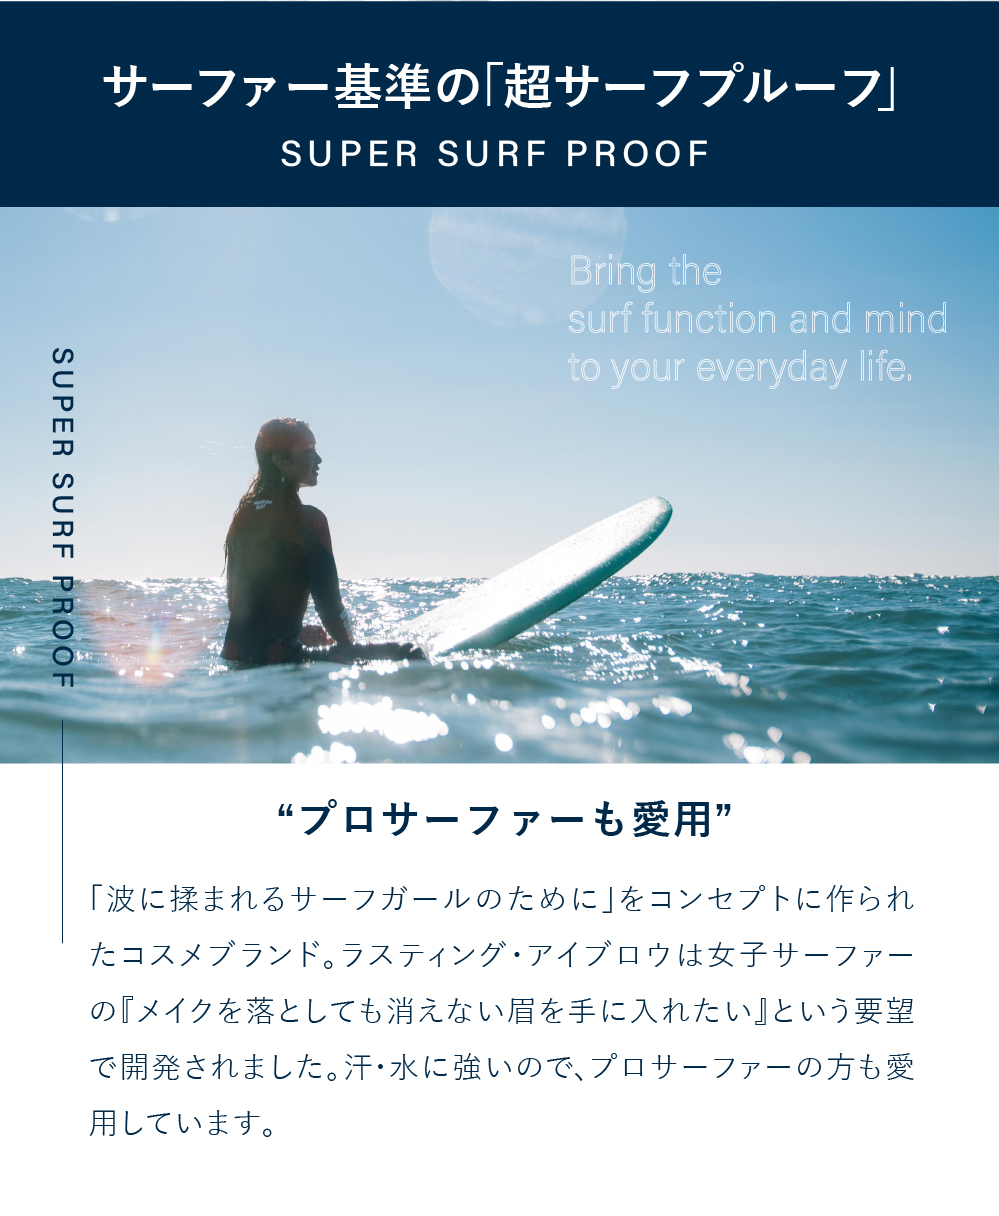 サーファー基準の超サーフプルーフ